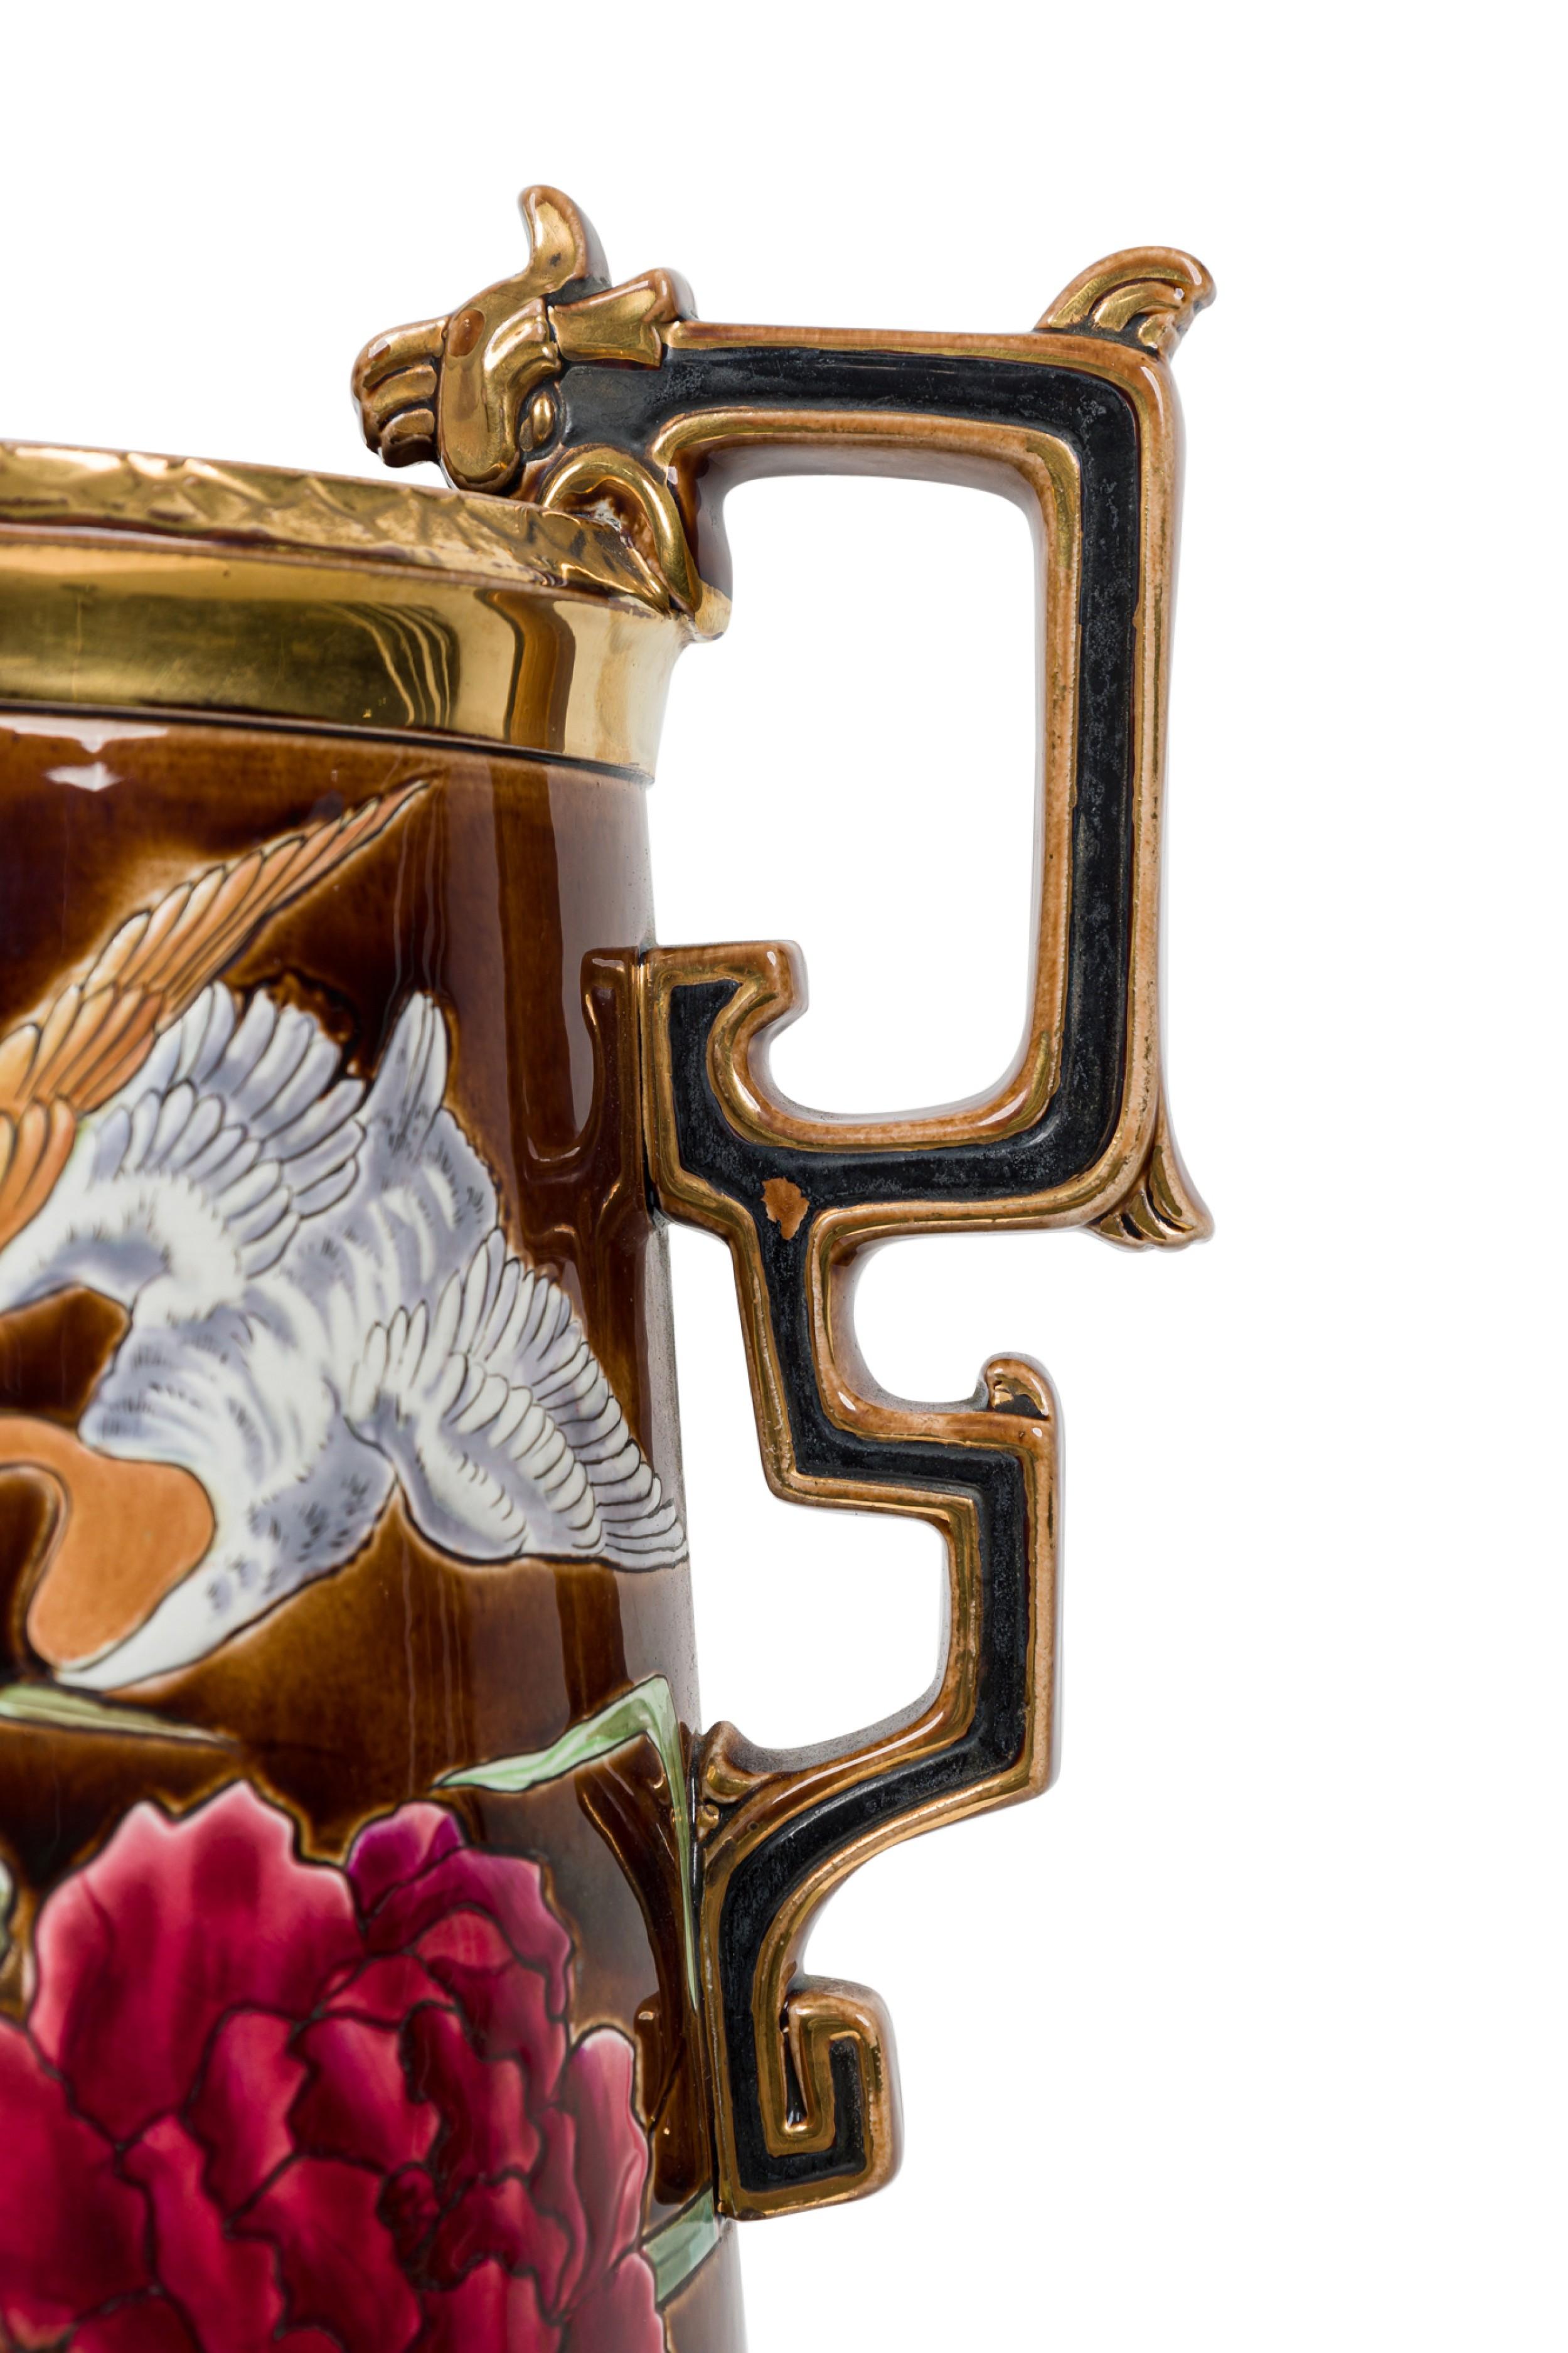 Vase monumental en céramique du mouvement esthétique hollandais victorien (19e siècle), de forme ovoïde à pied avec des poignées en forme de clé de voûte ornées, présentant une scène de nature en bas-relief, un canard planant au-dessus d'une flore